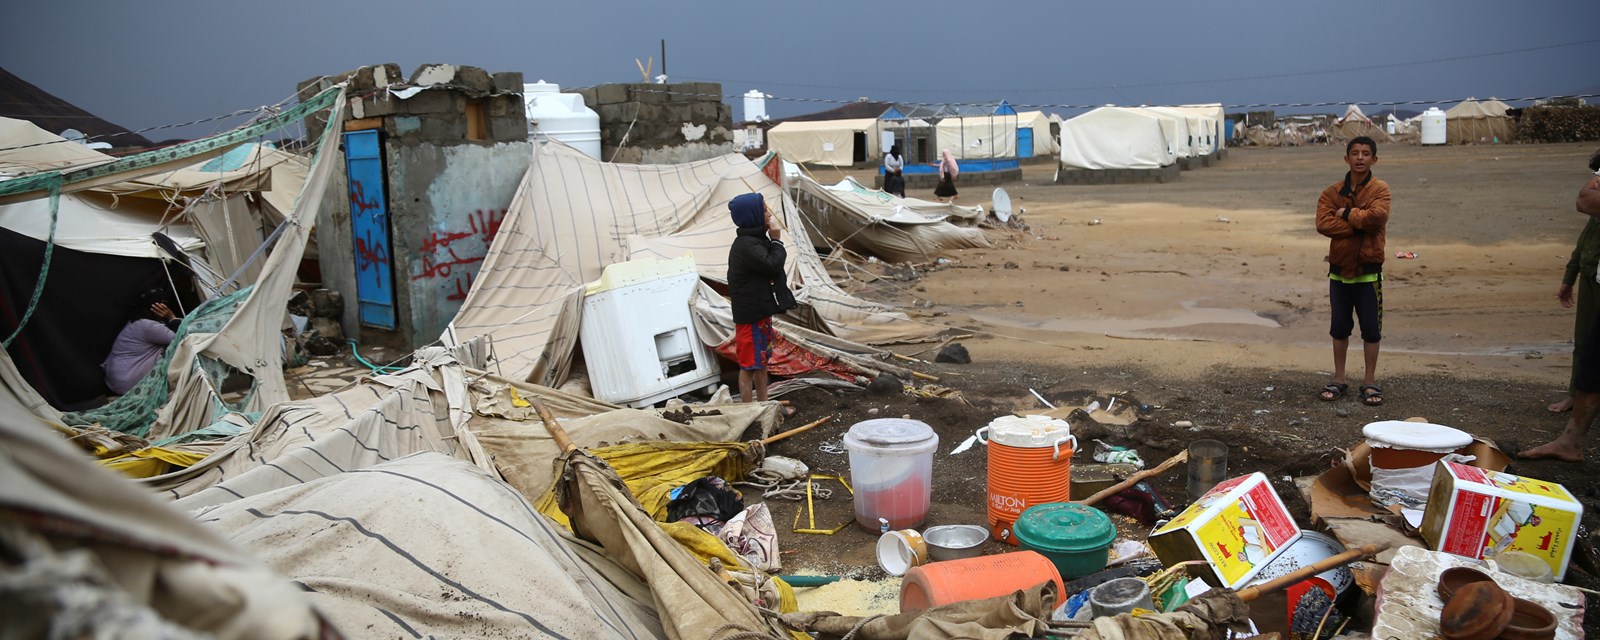 Raserte telt i flyktningleir i Jemen.